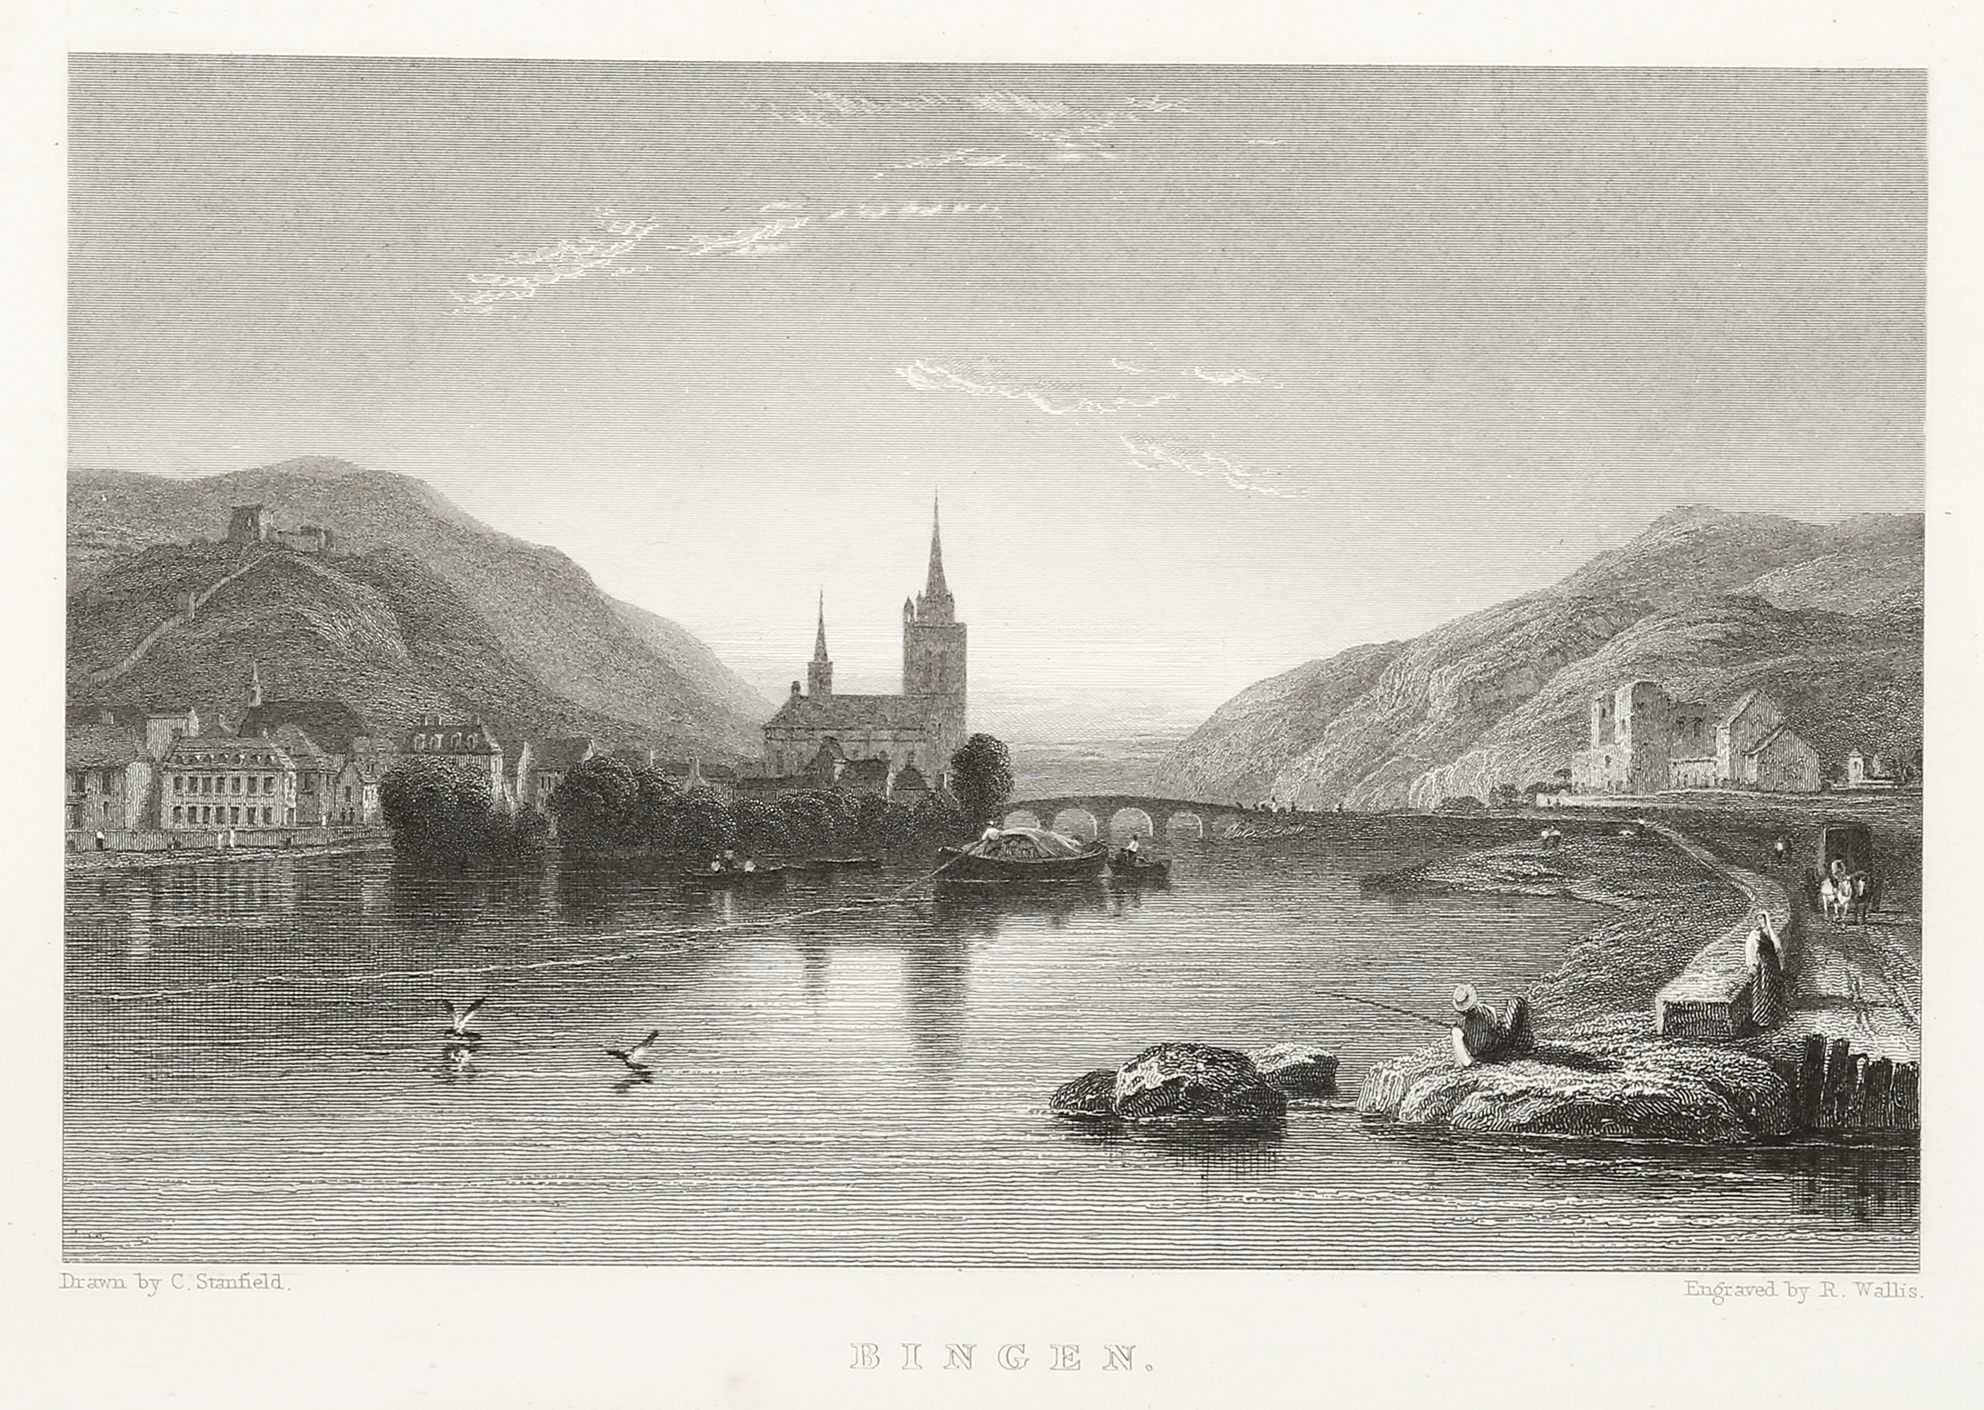 Bingen - Antique Print from 1833